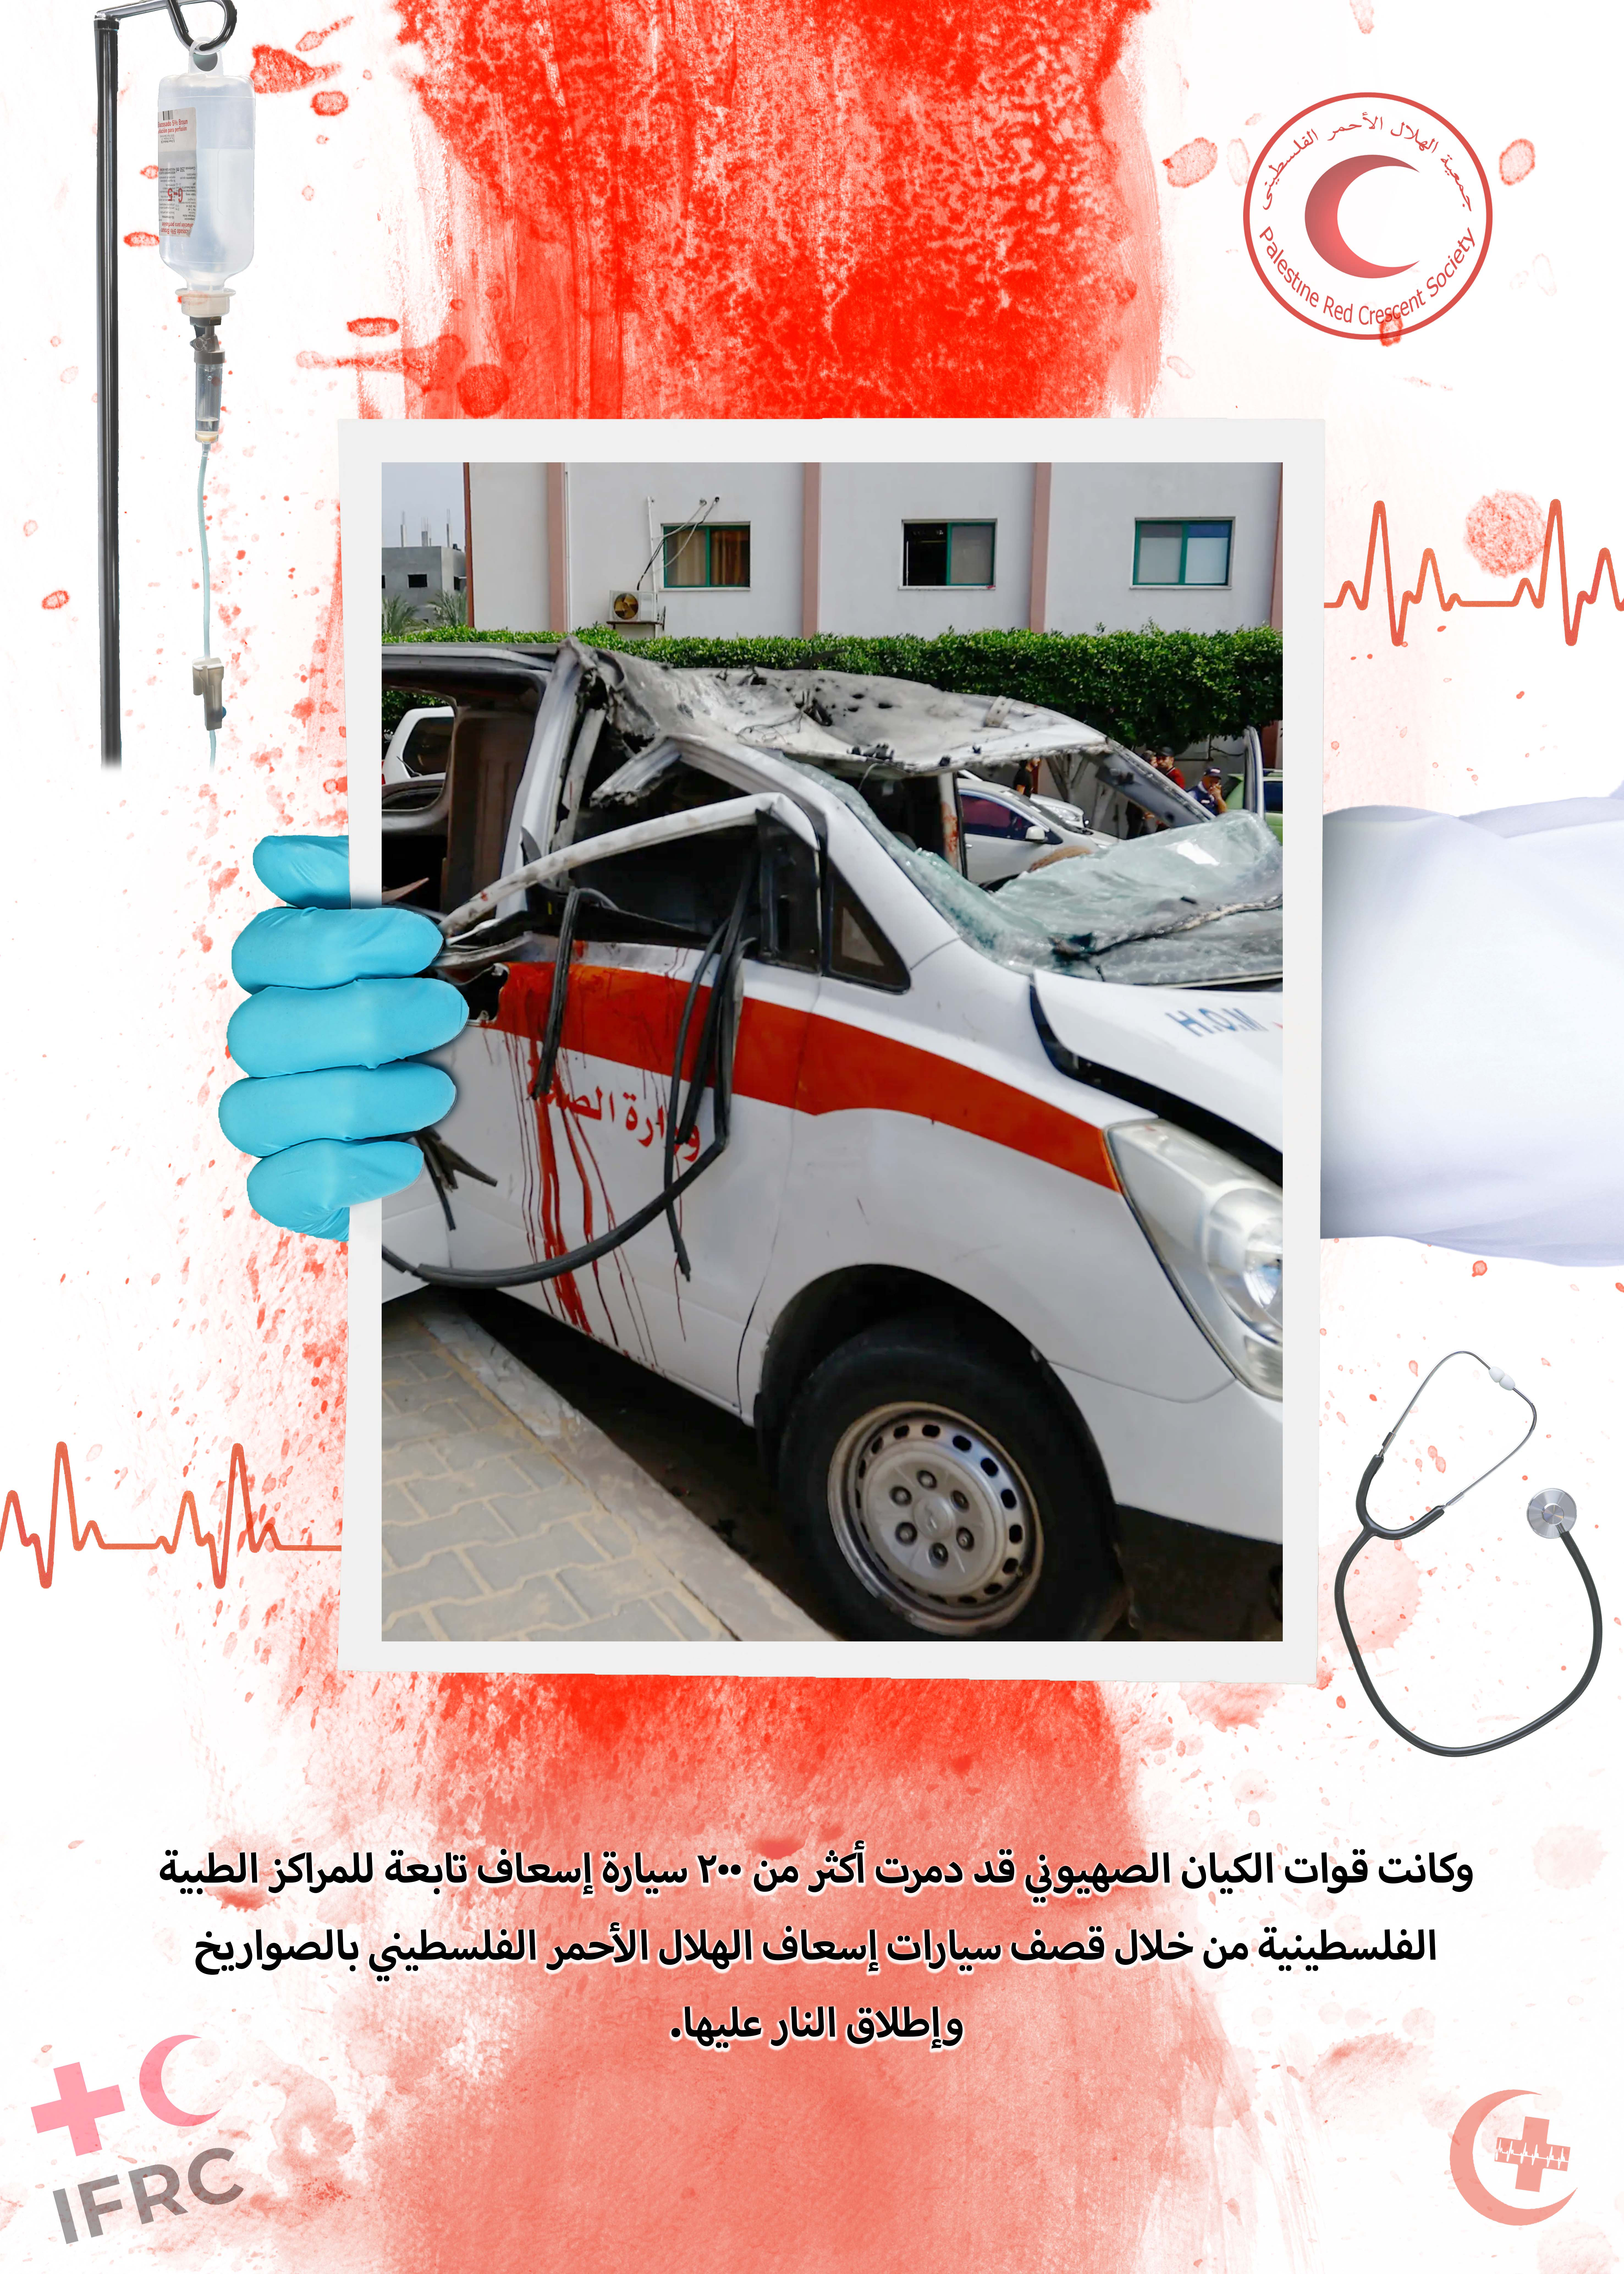 الاعتداء على المستشفيات وسيارات الإسعاف والطواقم الطبية في قطاع غزة